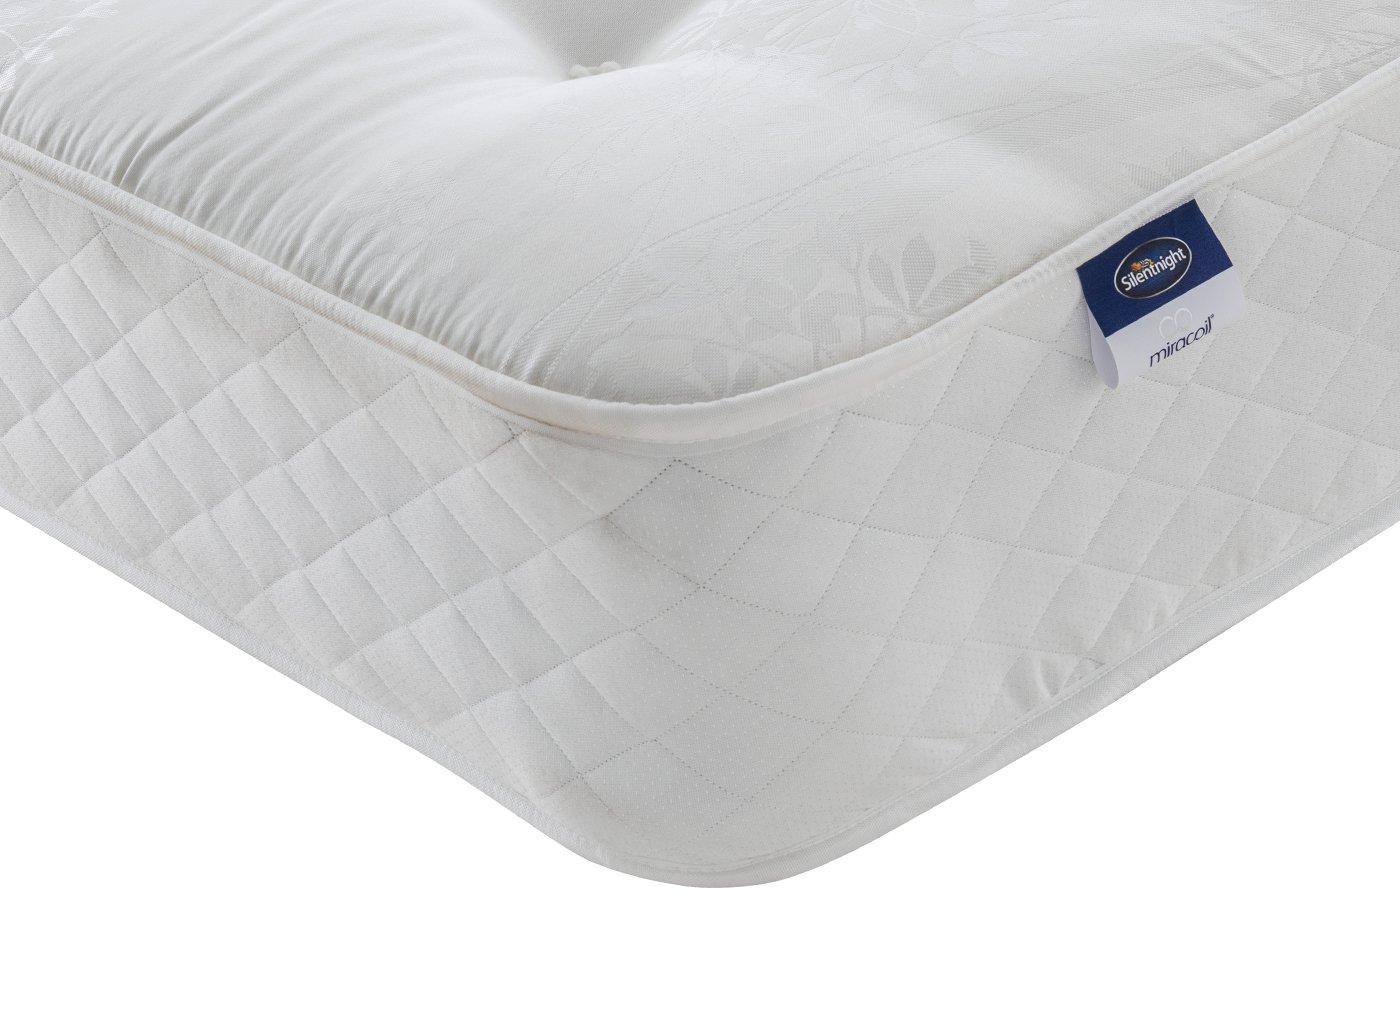 silent night miracoil firm mattress